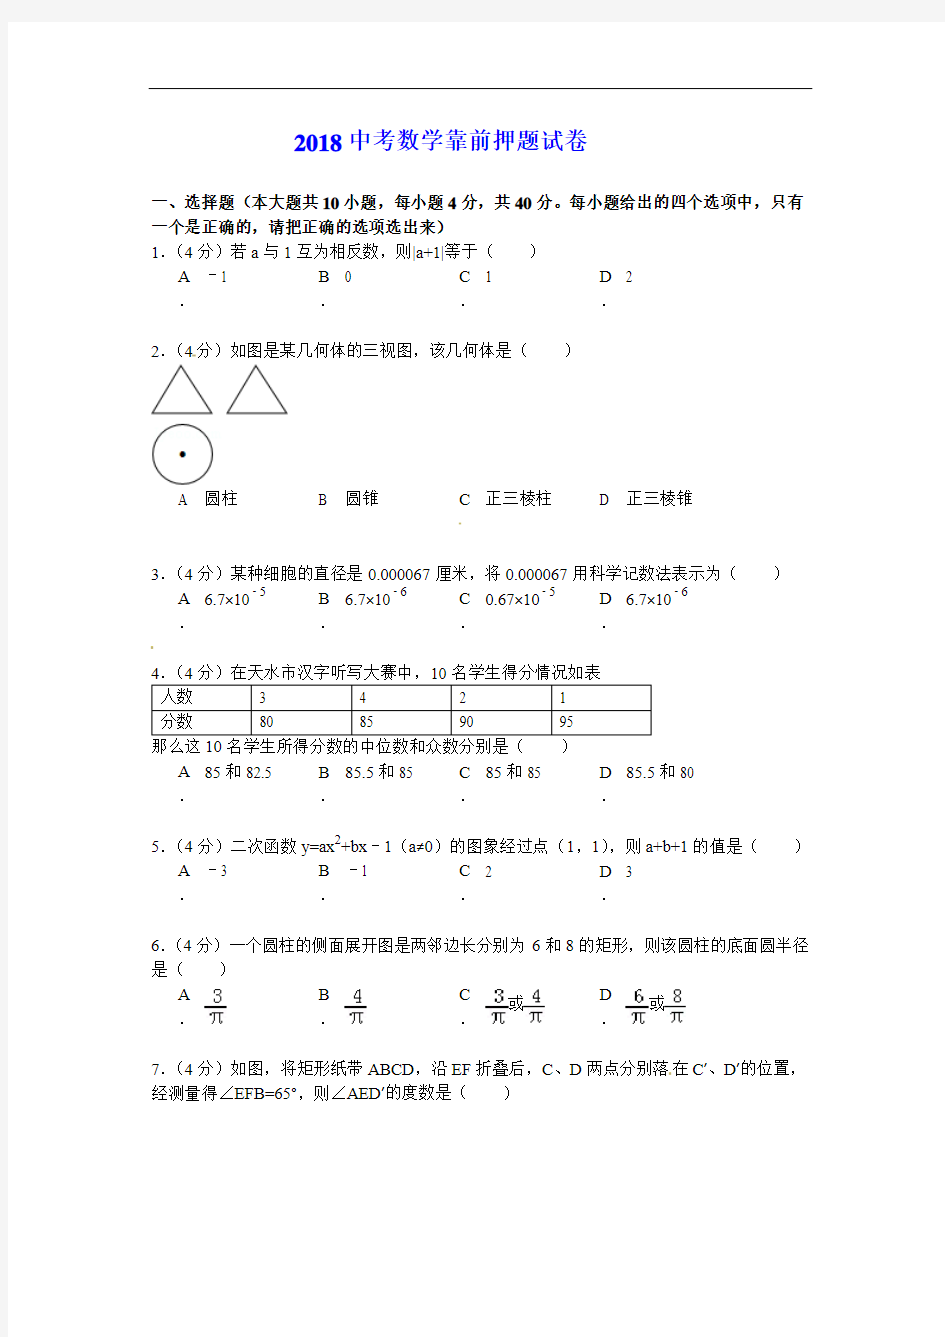 2018-2019年广元市数学中考数学押题试卷(2套)附答案